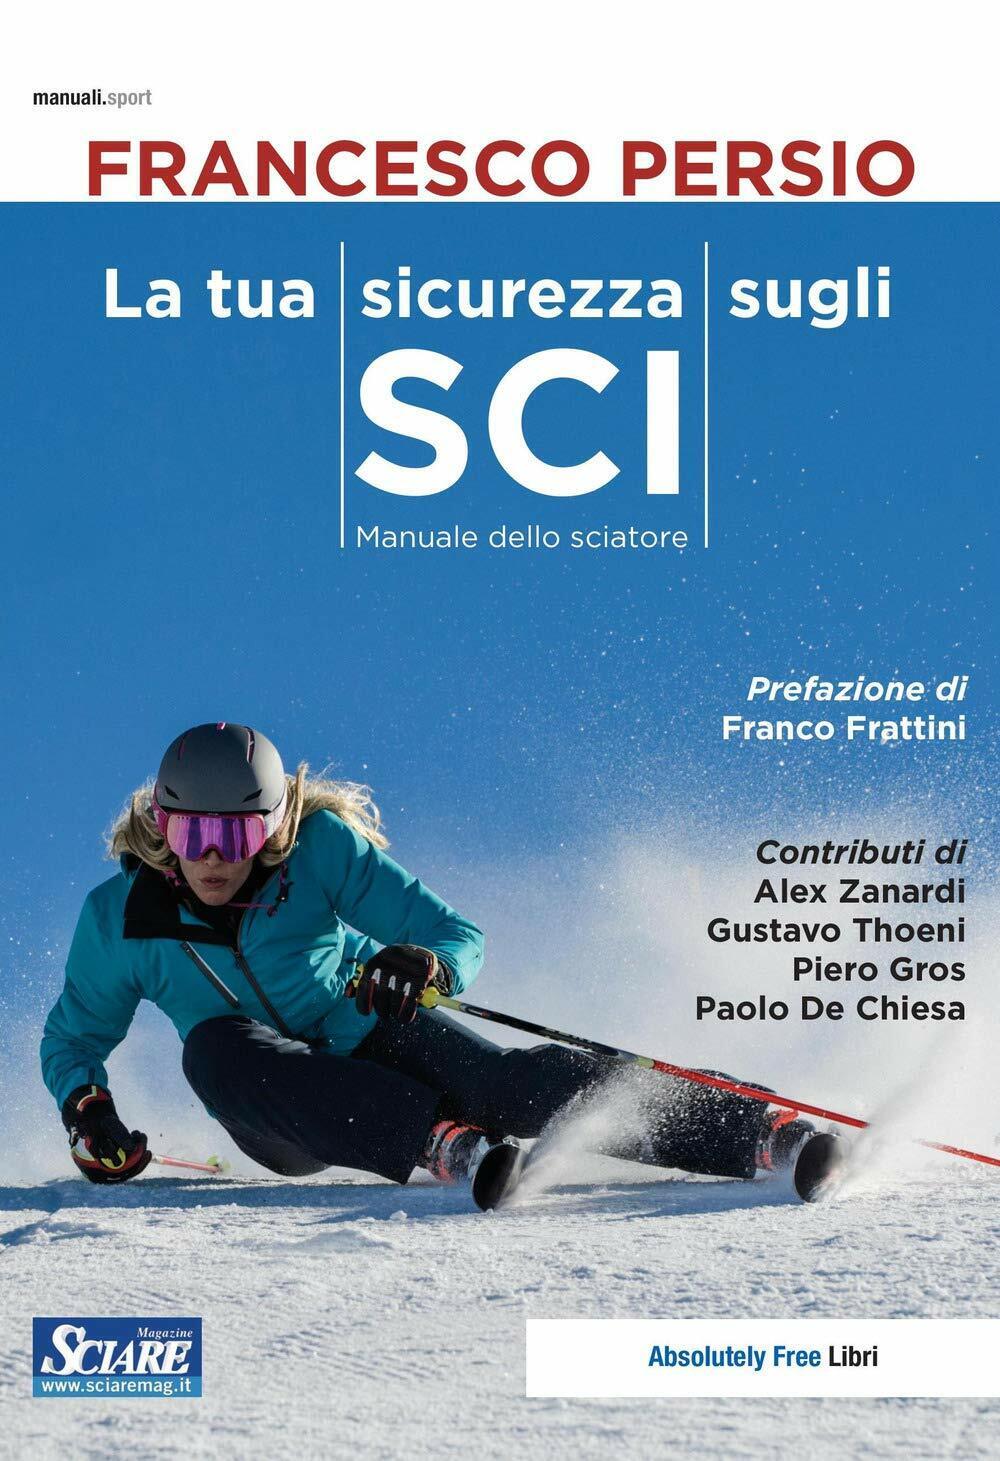 La tua sicurezza sugli sci - Francesco Persio - Absolutely Free, 2019